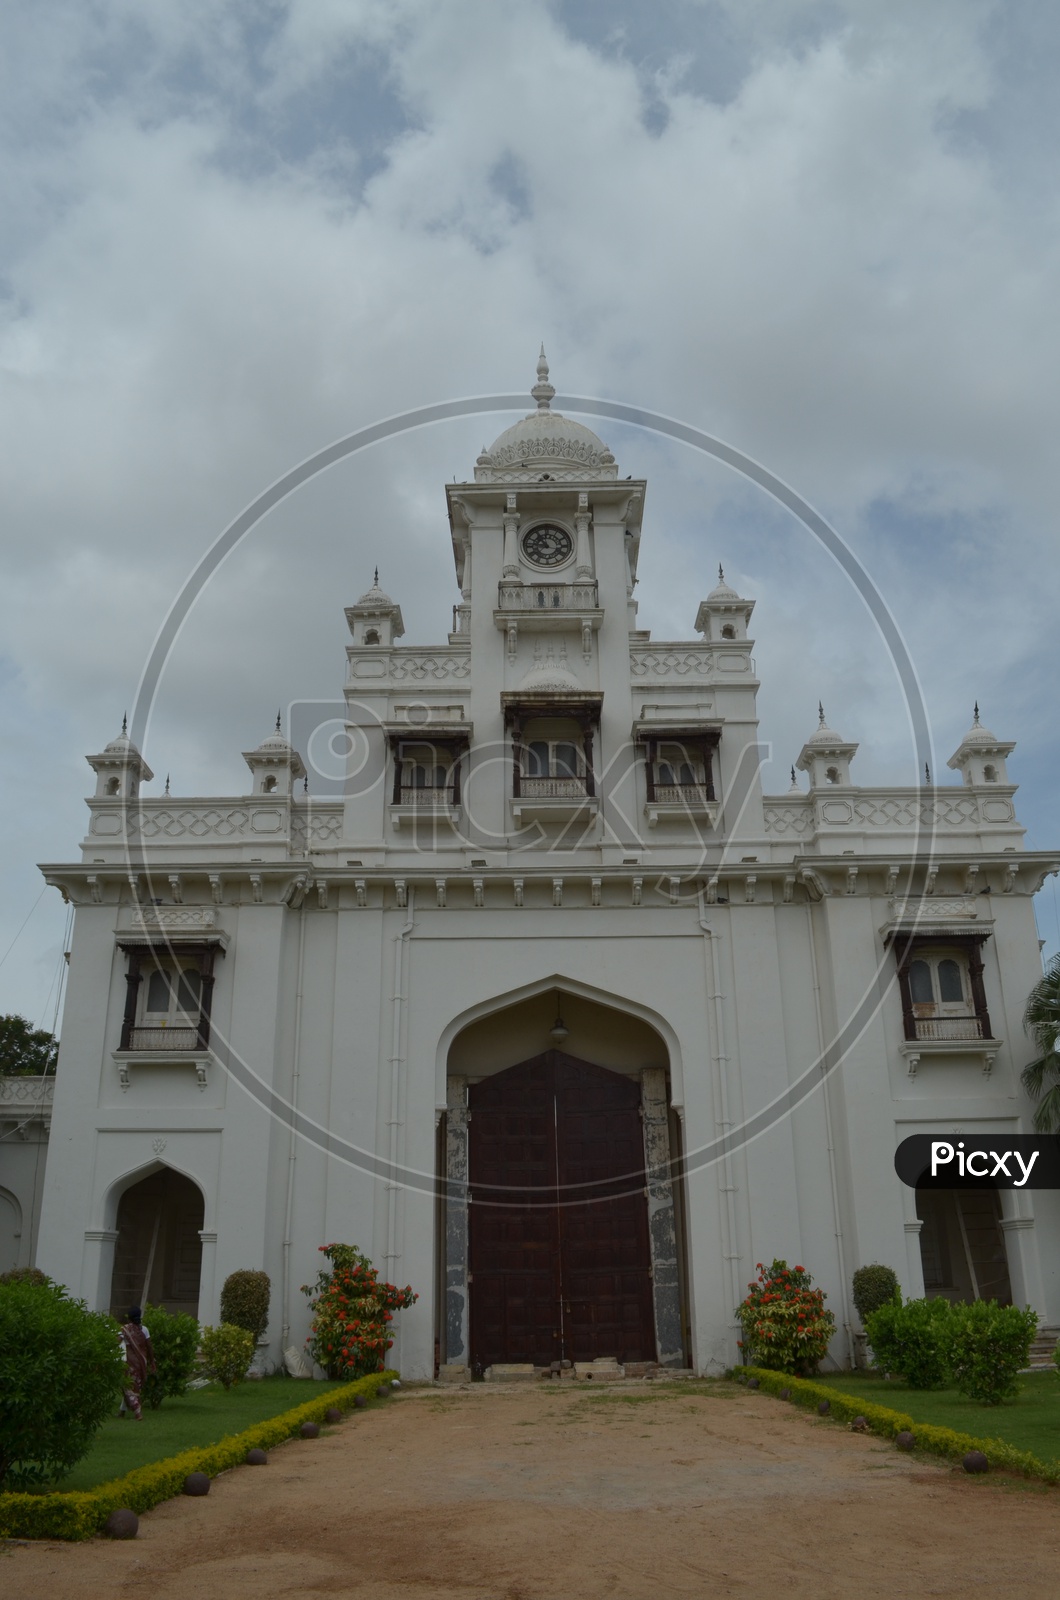 Clock Tower at Chowmahalla Palace, Hyderabad